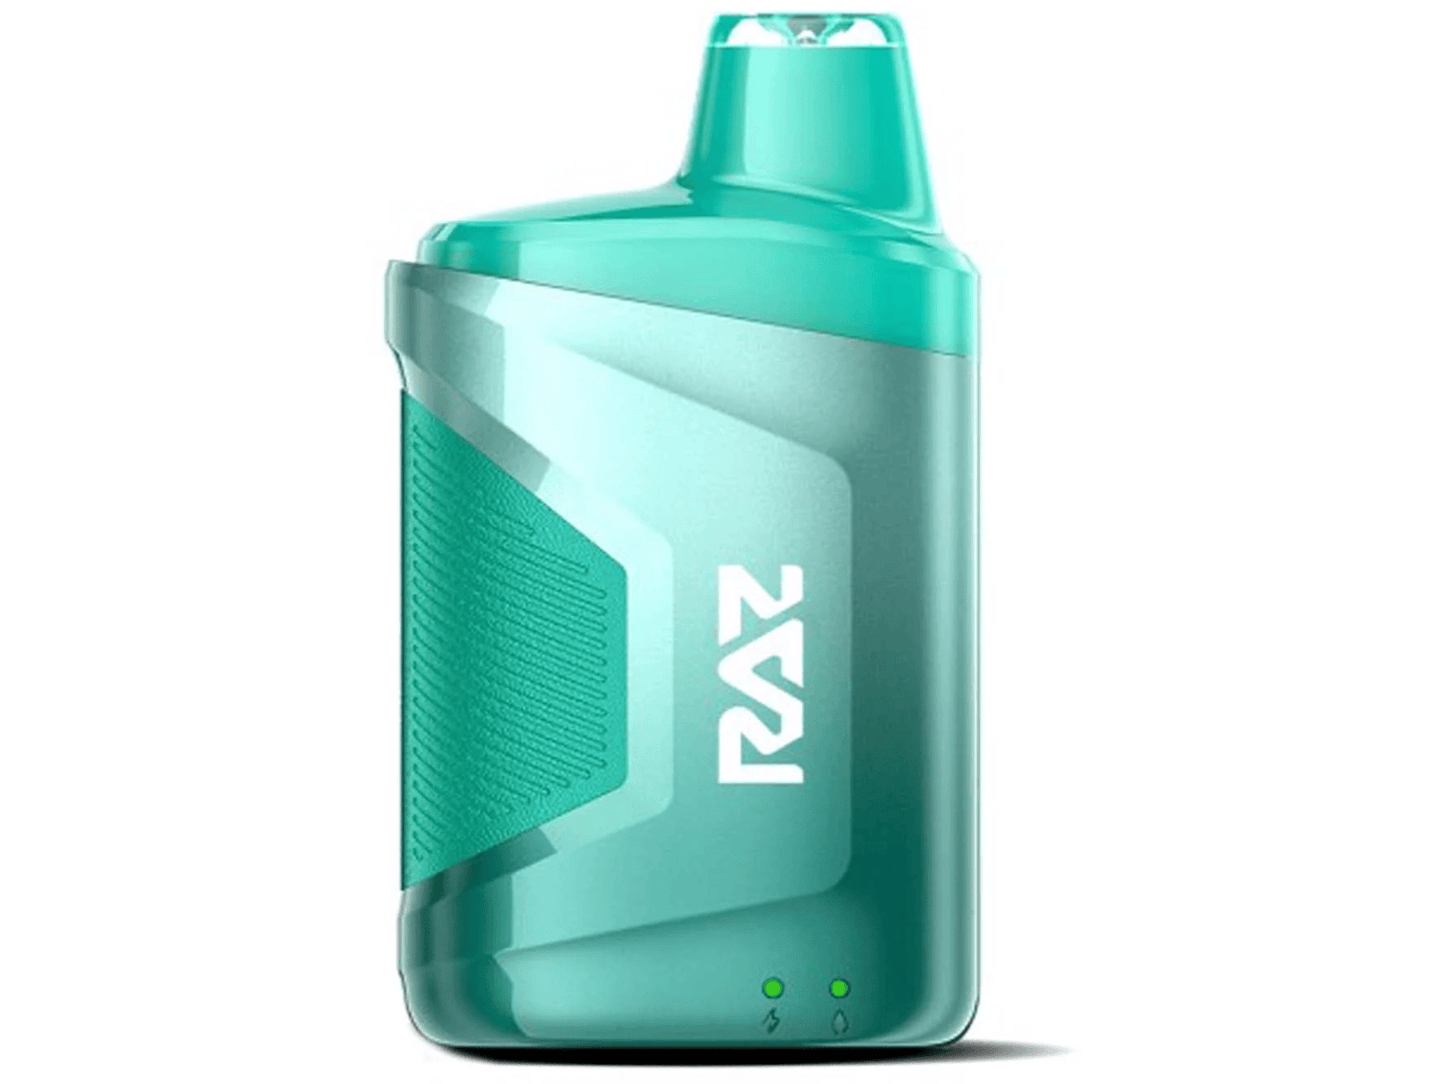 RAZ CA6000 Spearmint flavored disposable vape device.